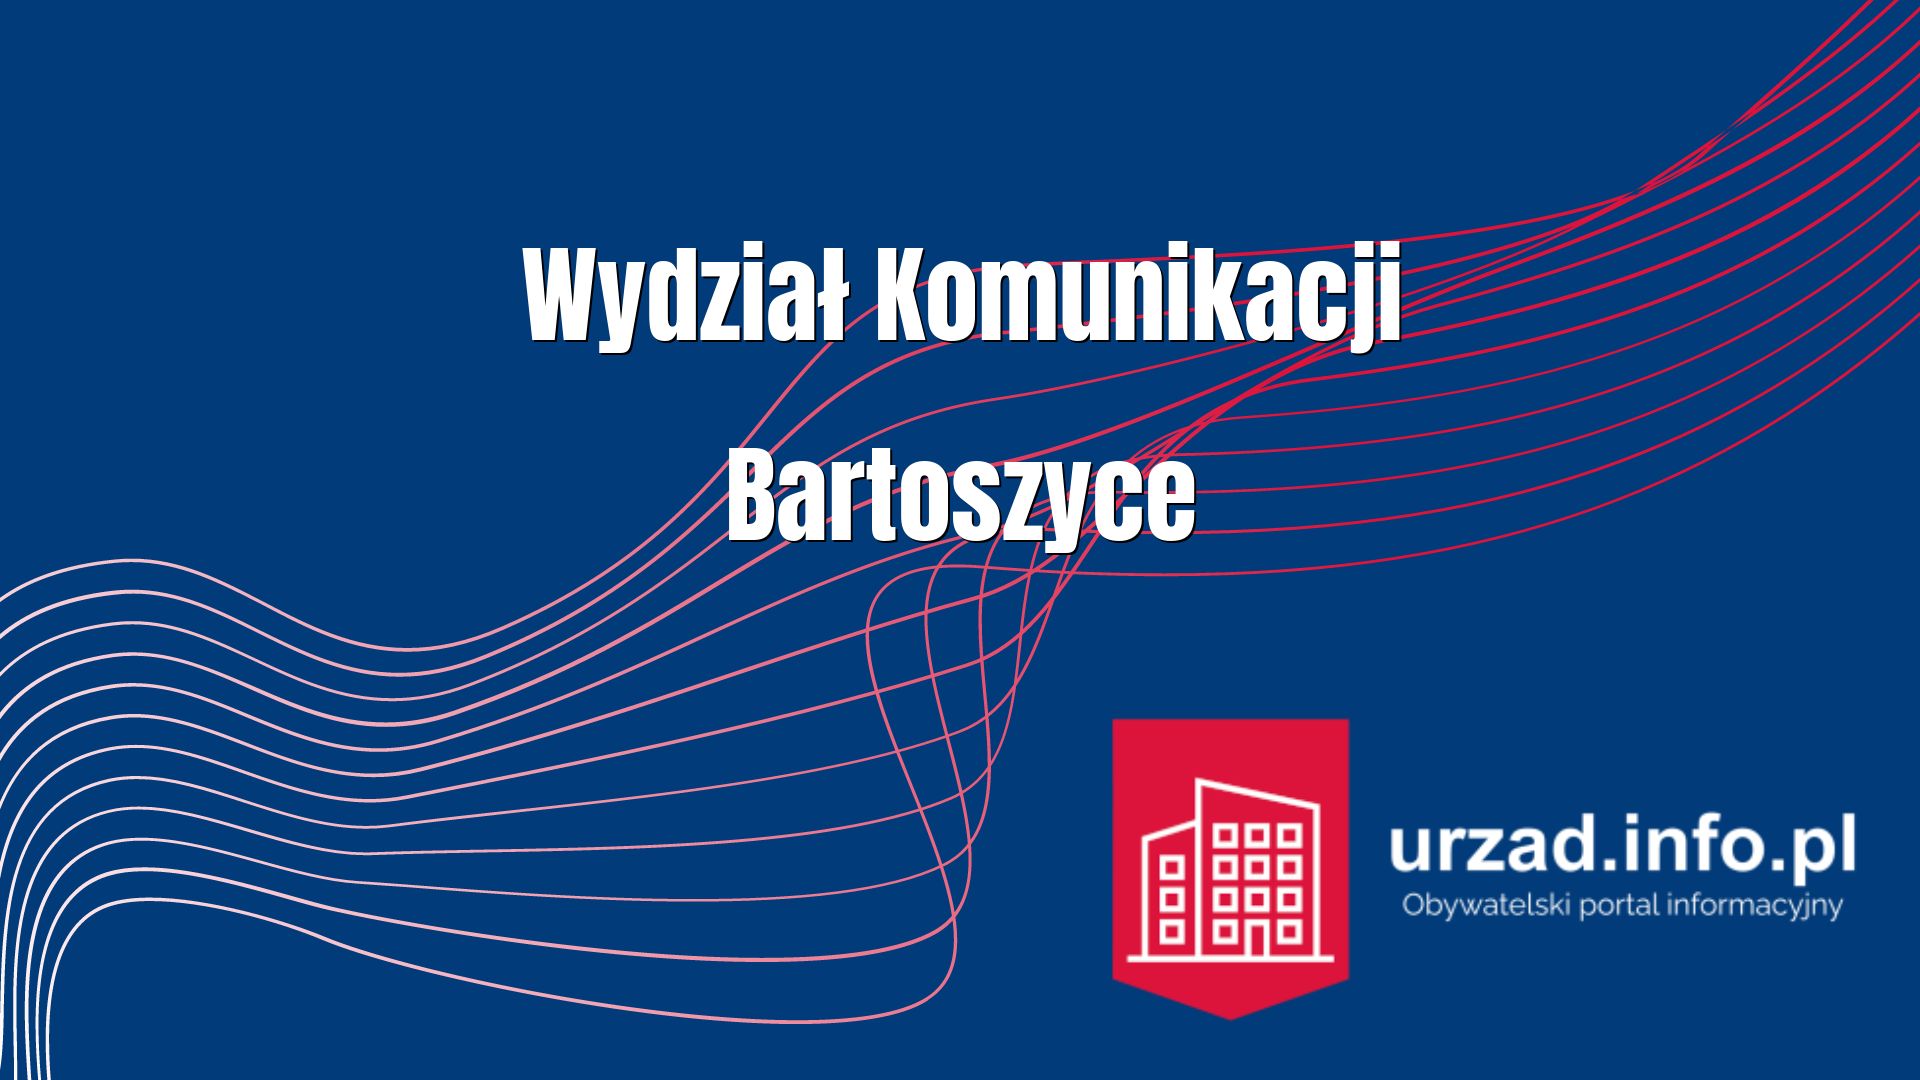 Wydział Komunikacji Bartoszyce